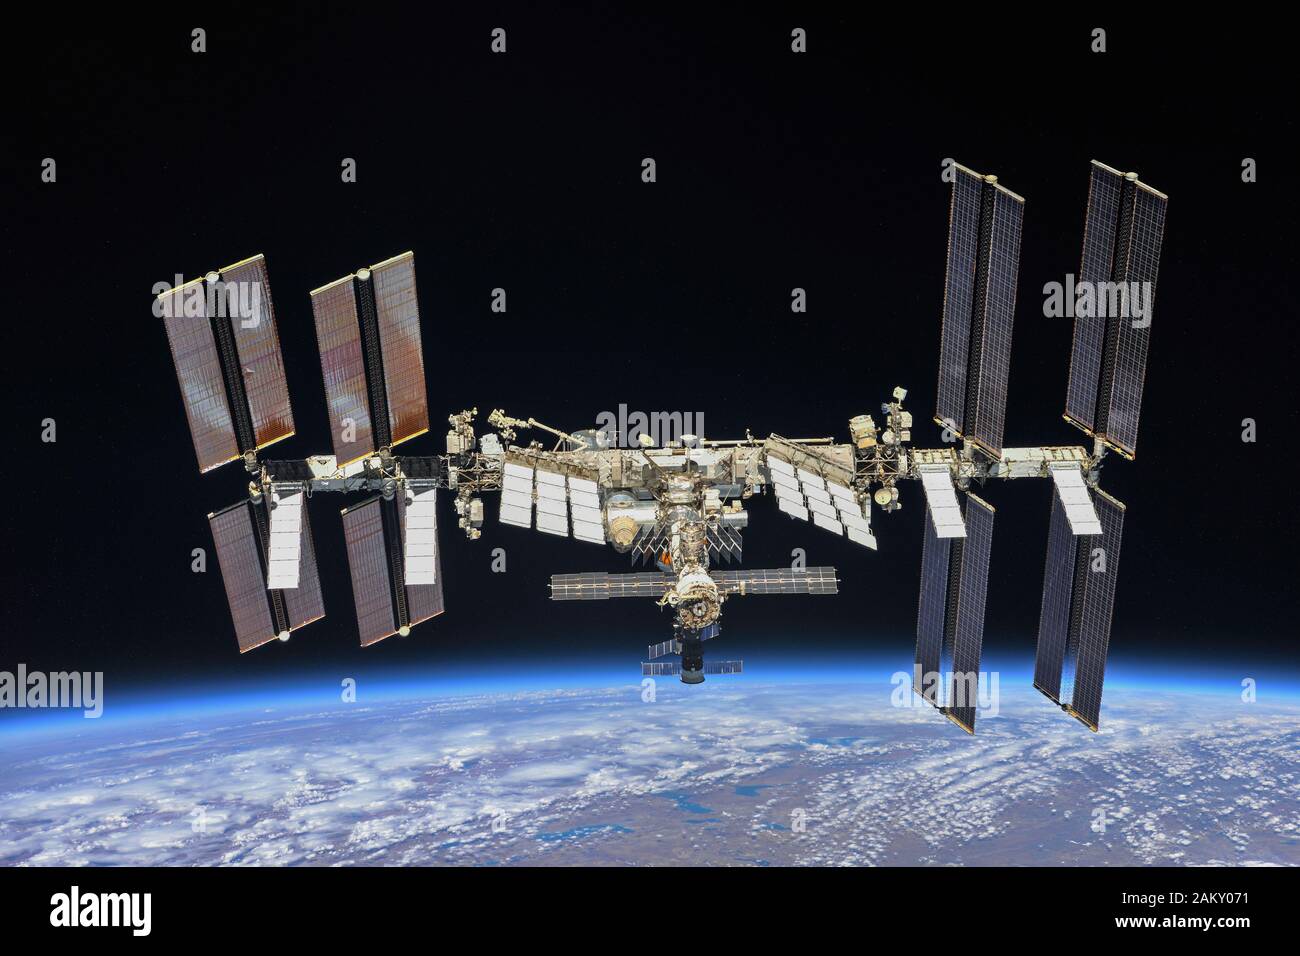 La Stazione spaziale Internazionale fotografata da 56 membri dell'equipaggio della spedizione da un veicolo spaziale Soyuz dopo il disancoraggio il 4 ottobre 2018 Foto Stock